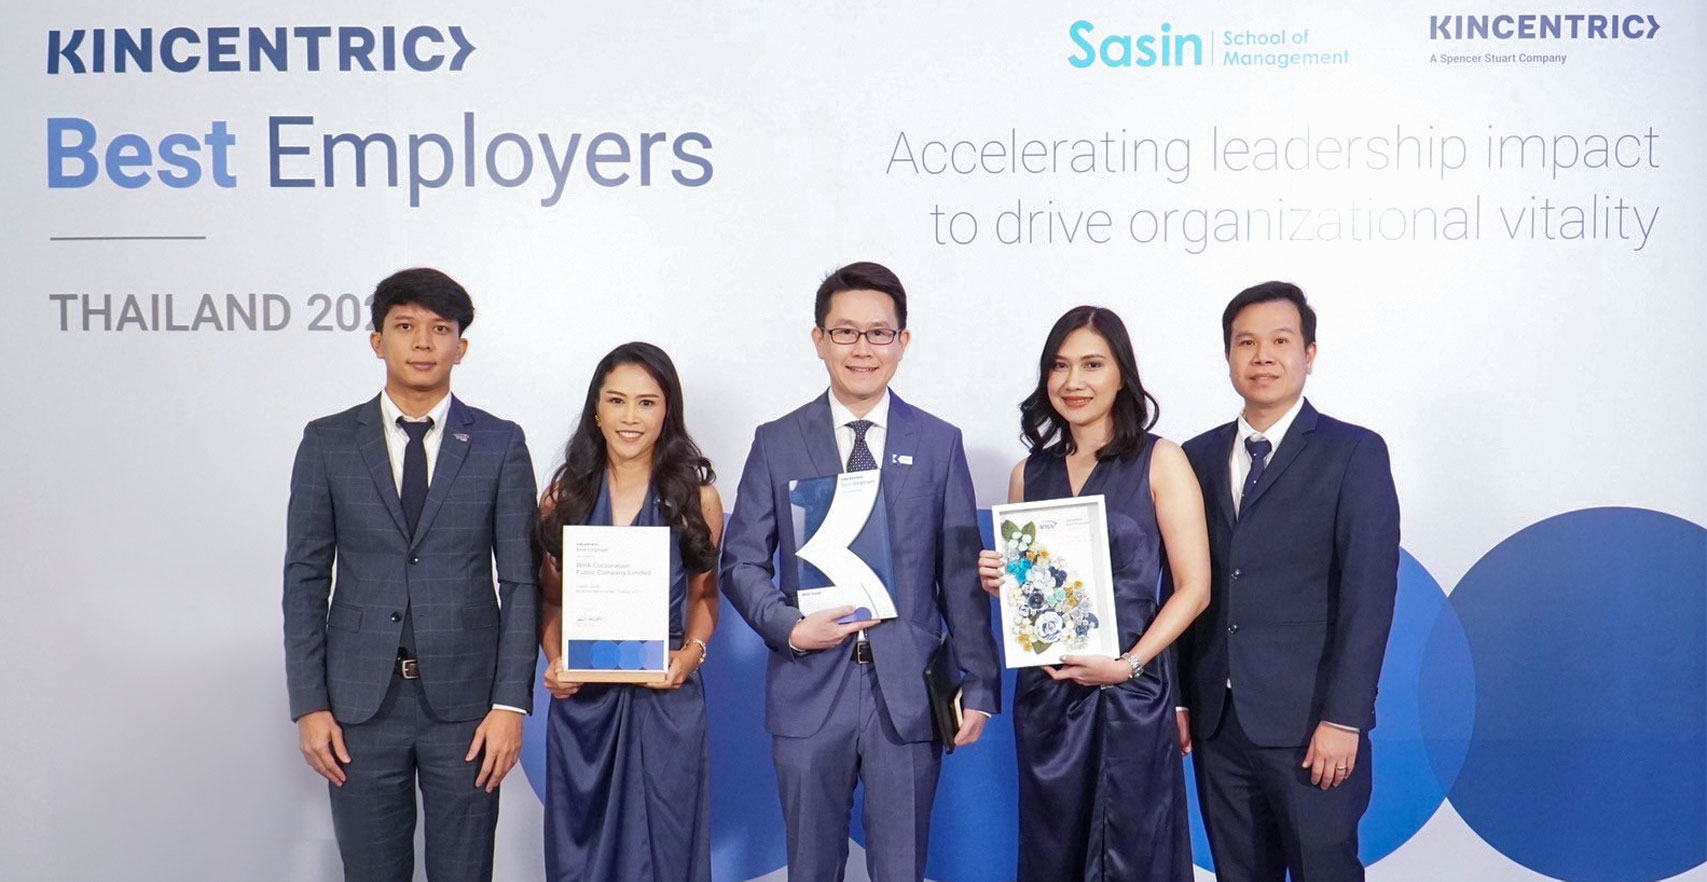 ดับบลิวเอชเอ กรุ๊ป ได้รับรางวัลสุดยอดองค์กรนายจ้างดีเด่นของคินเซนทริค แห่งประเทศไทย ประจำปี&nbsp;2023&nbsp;(Kincentric Best Employer Award Thailand 2023)